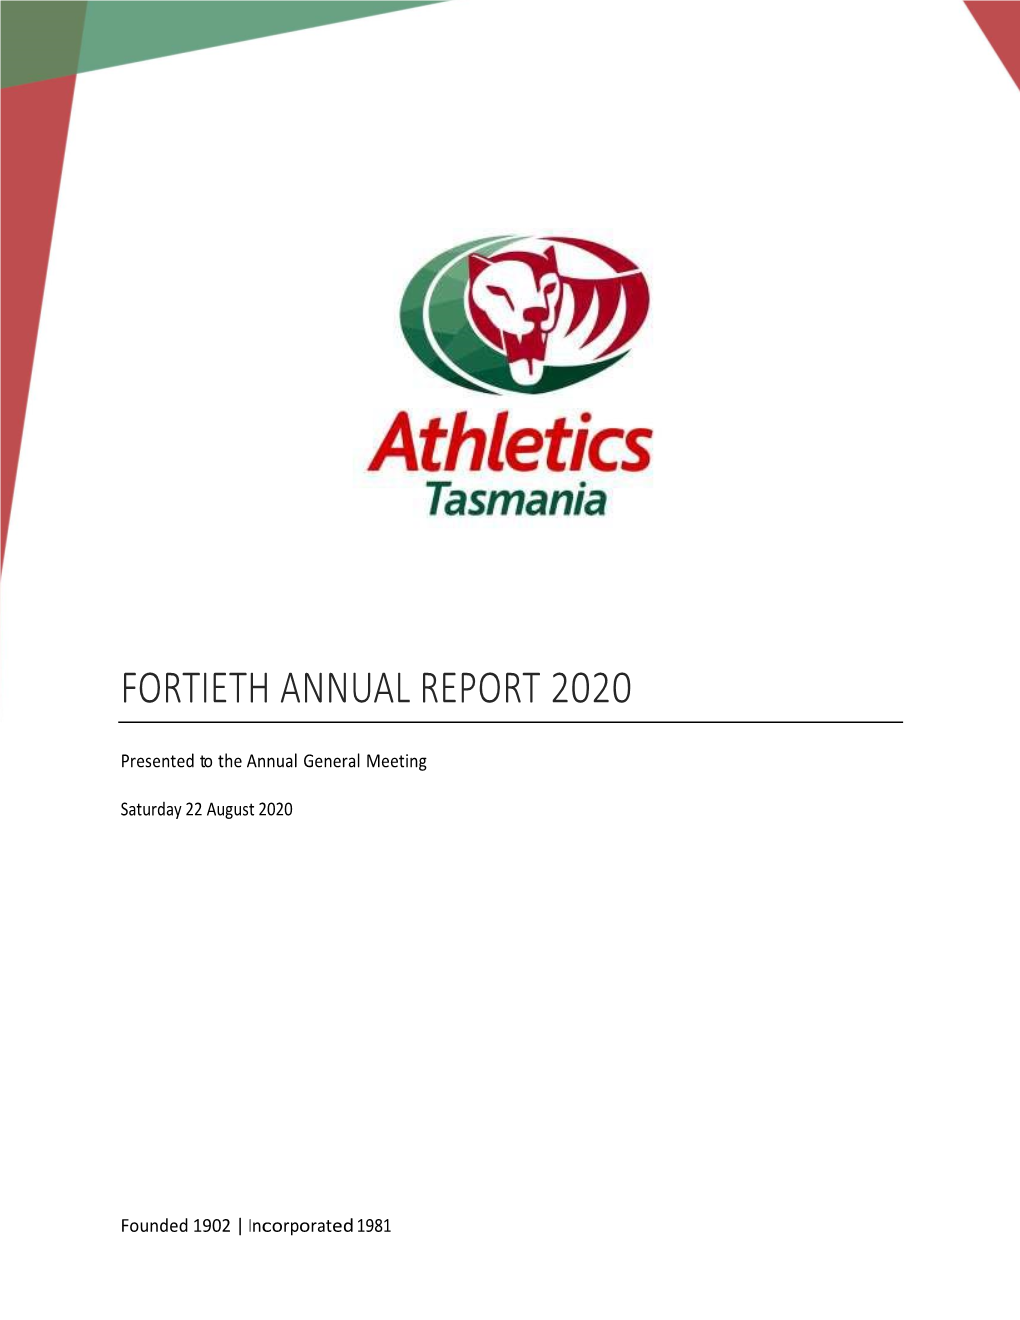 Fortieth Annual Report 2020